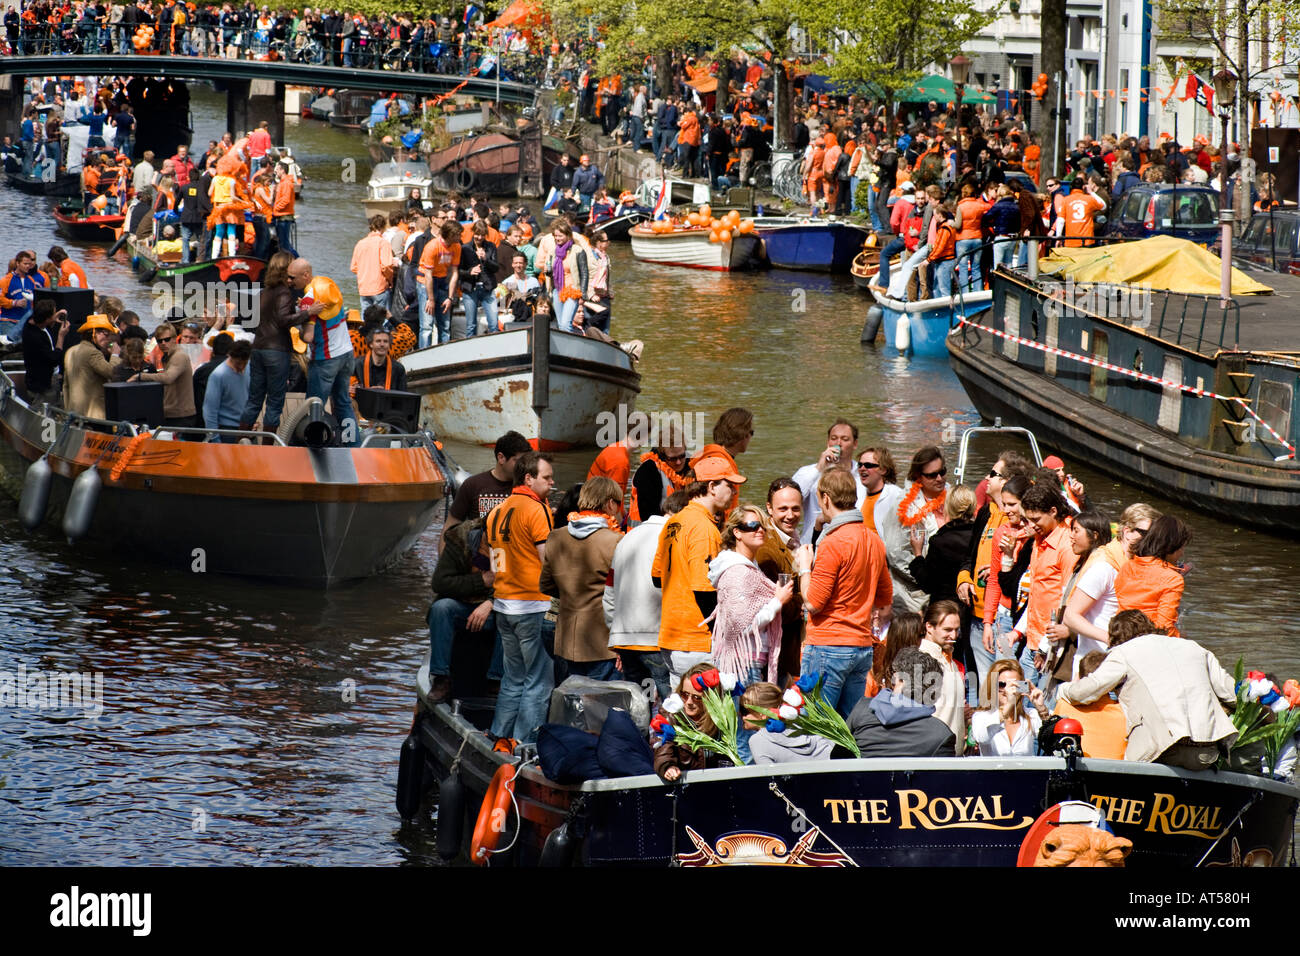 Naranja es el color dominante en los canales de Amsterdam, en la celebración del cumpleaños de la Reina. Foto de stock